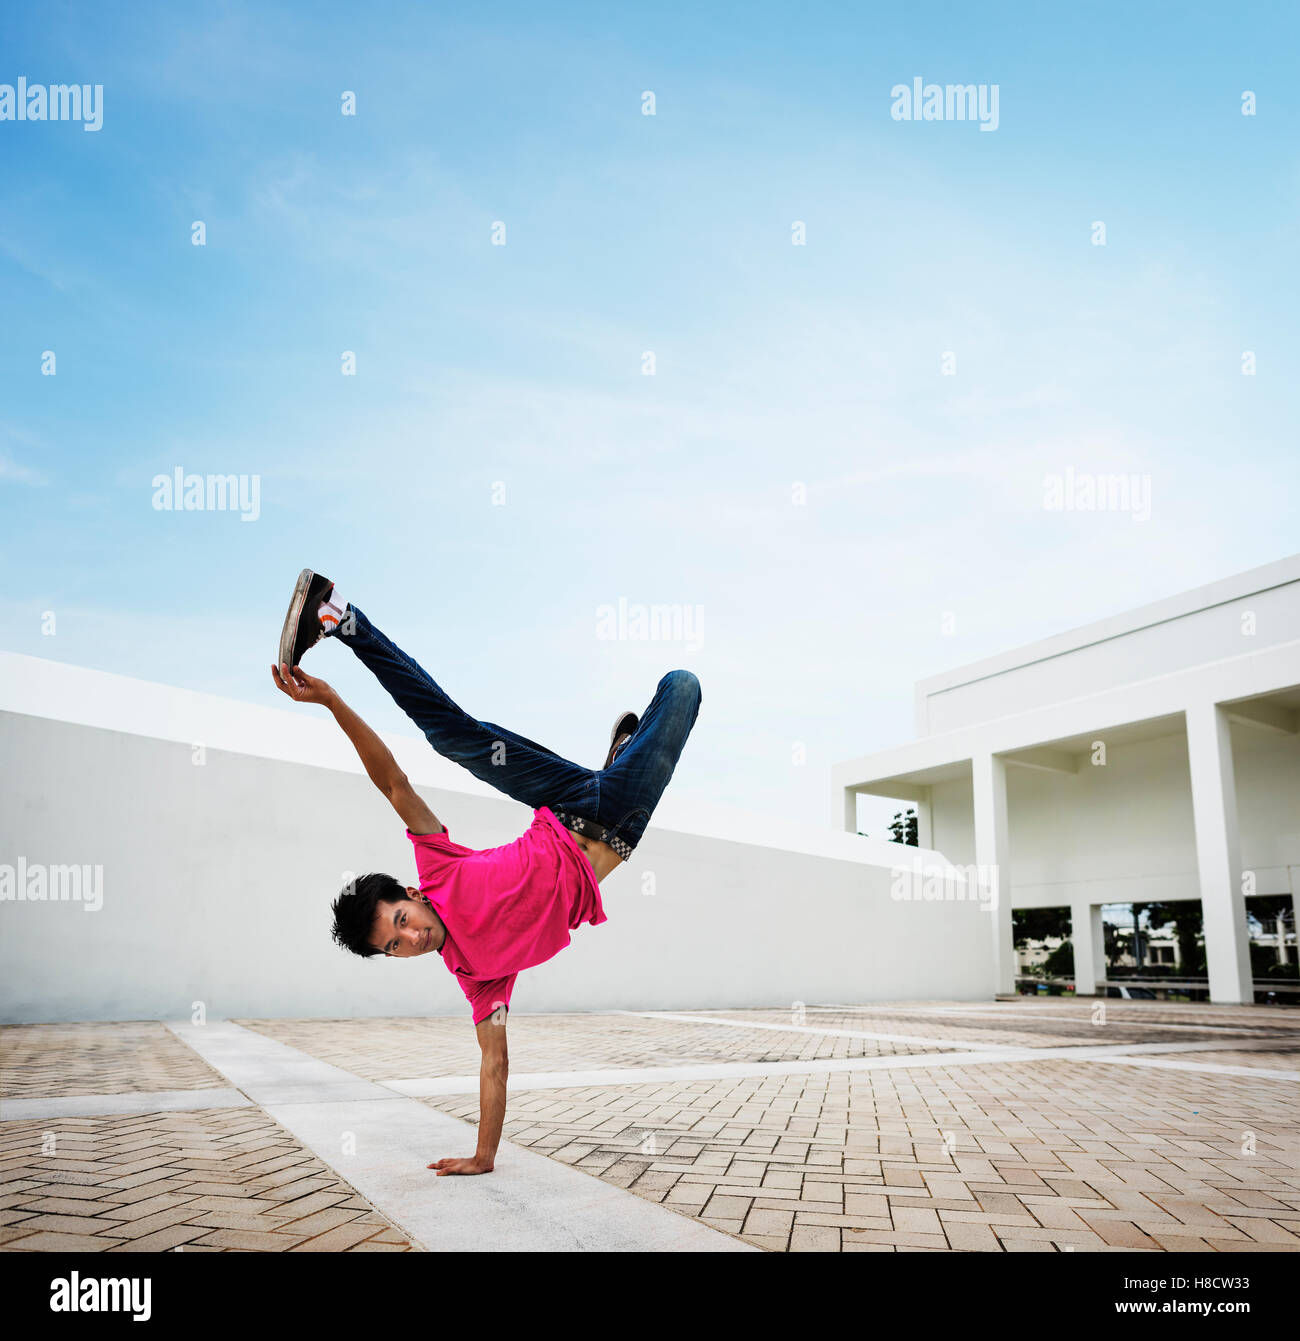 Movimientos de breakdance adolescentes moderno concepto de estilo de vida Foto de stock